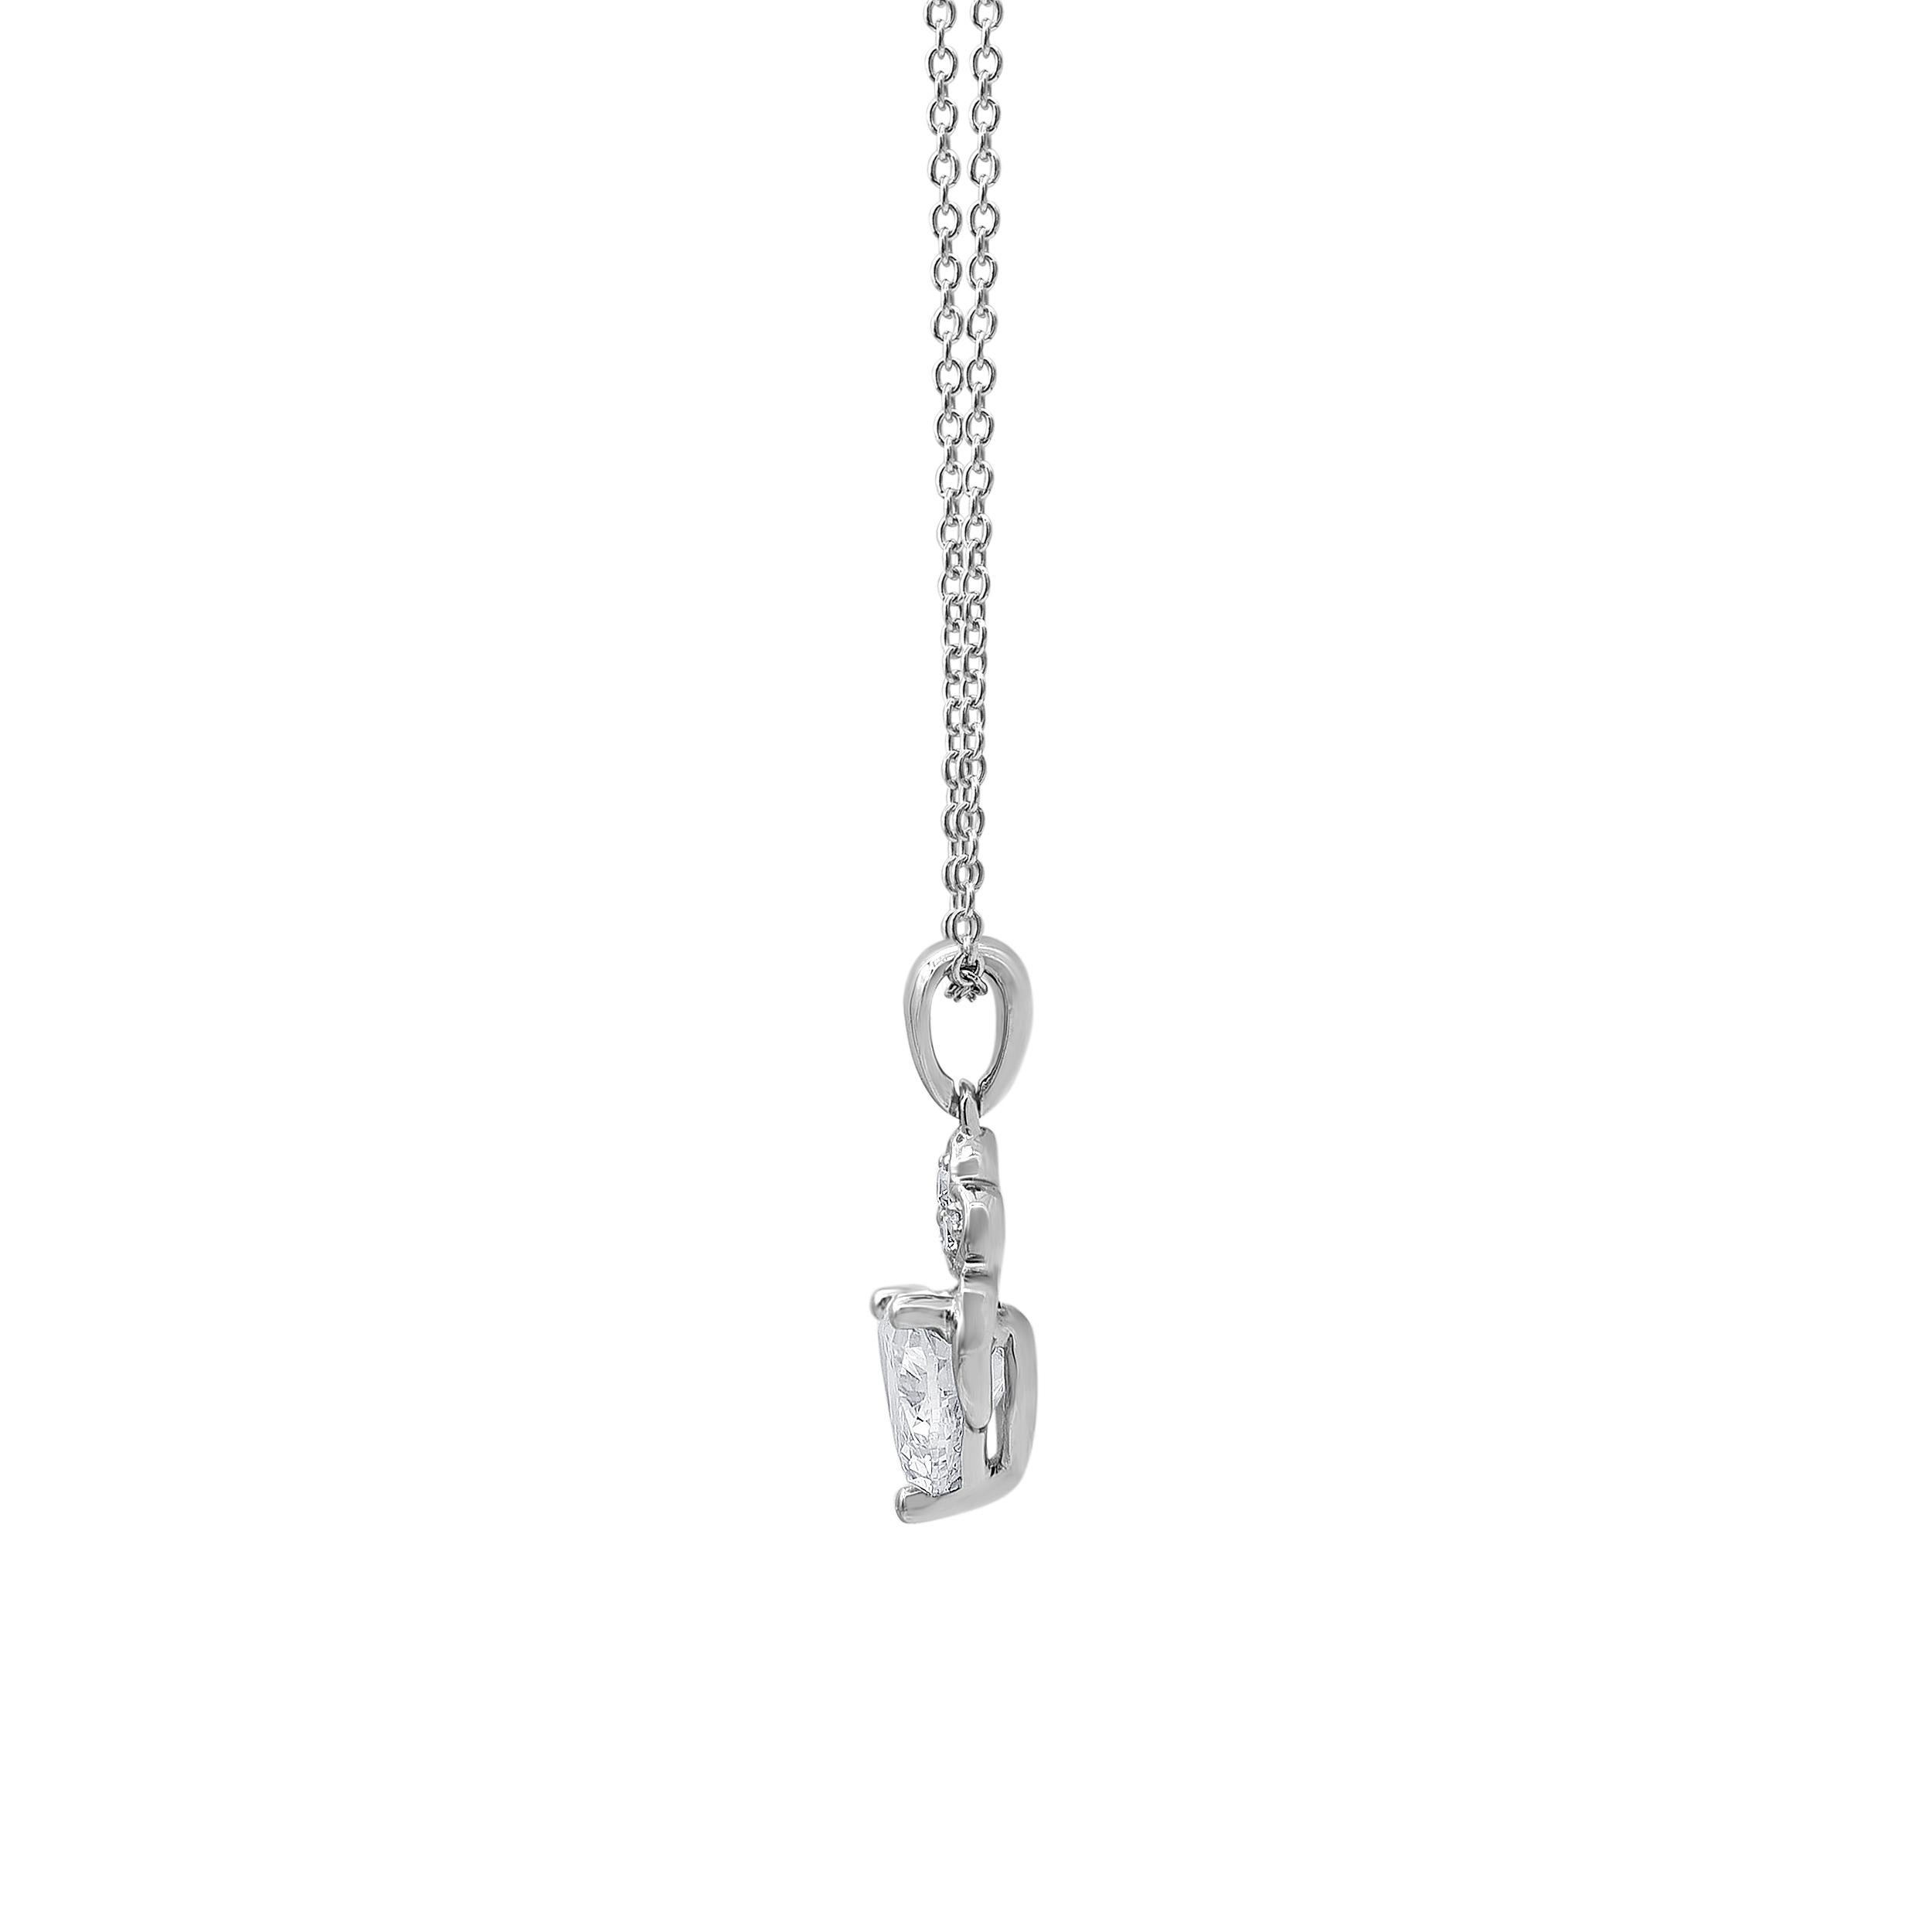 Romantic 1.00 Carat Diamond, 18K White Gold Prong Set Heart Pendant Necklace For Sale